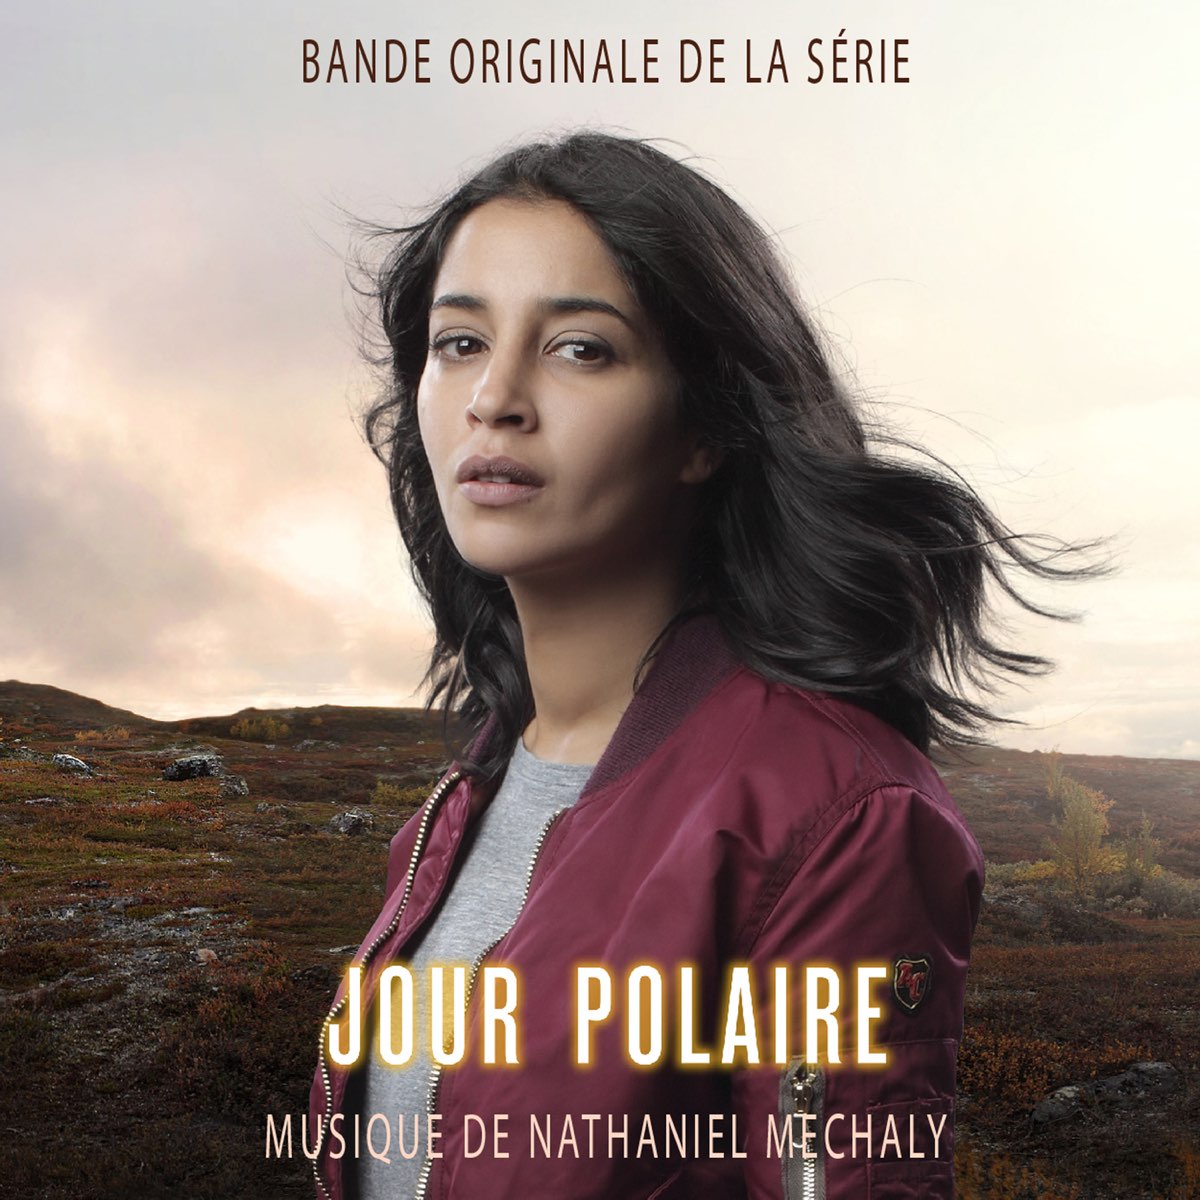 Jour polaire (Bande originale de la série) – Album par Nathaniel Méchaly &  Björn Stein – Apple Music